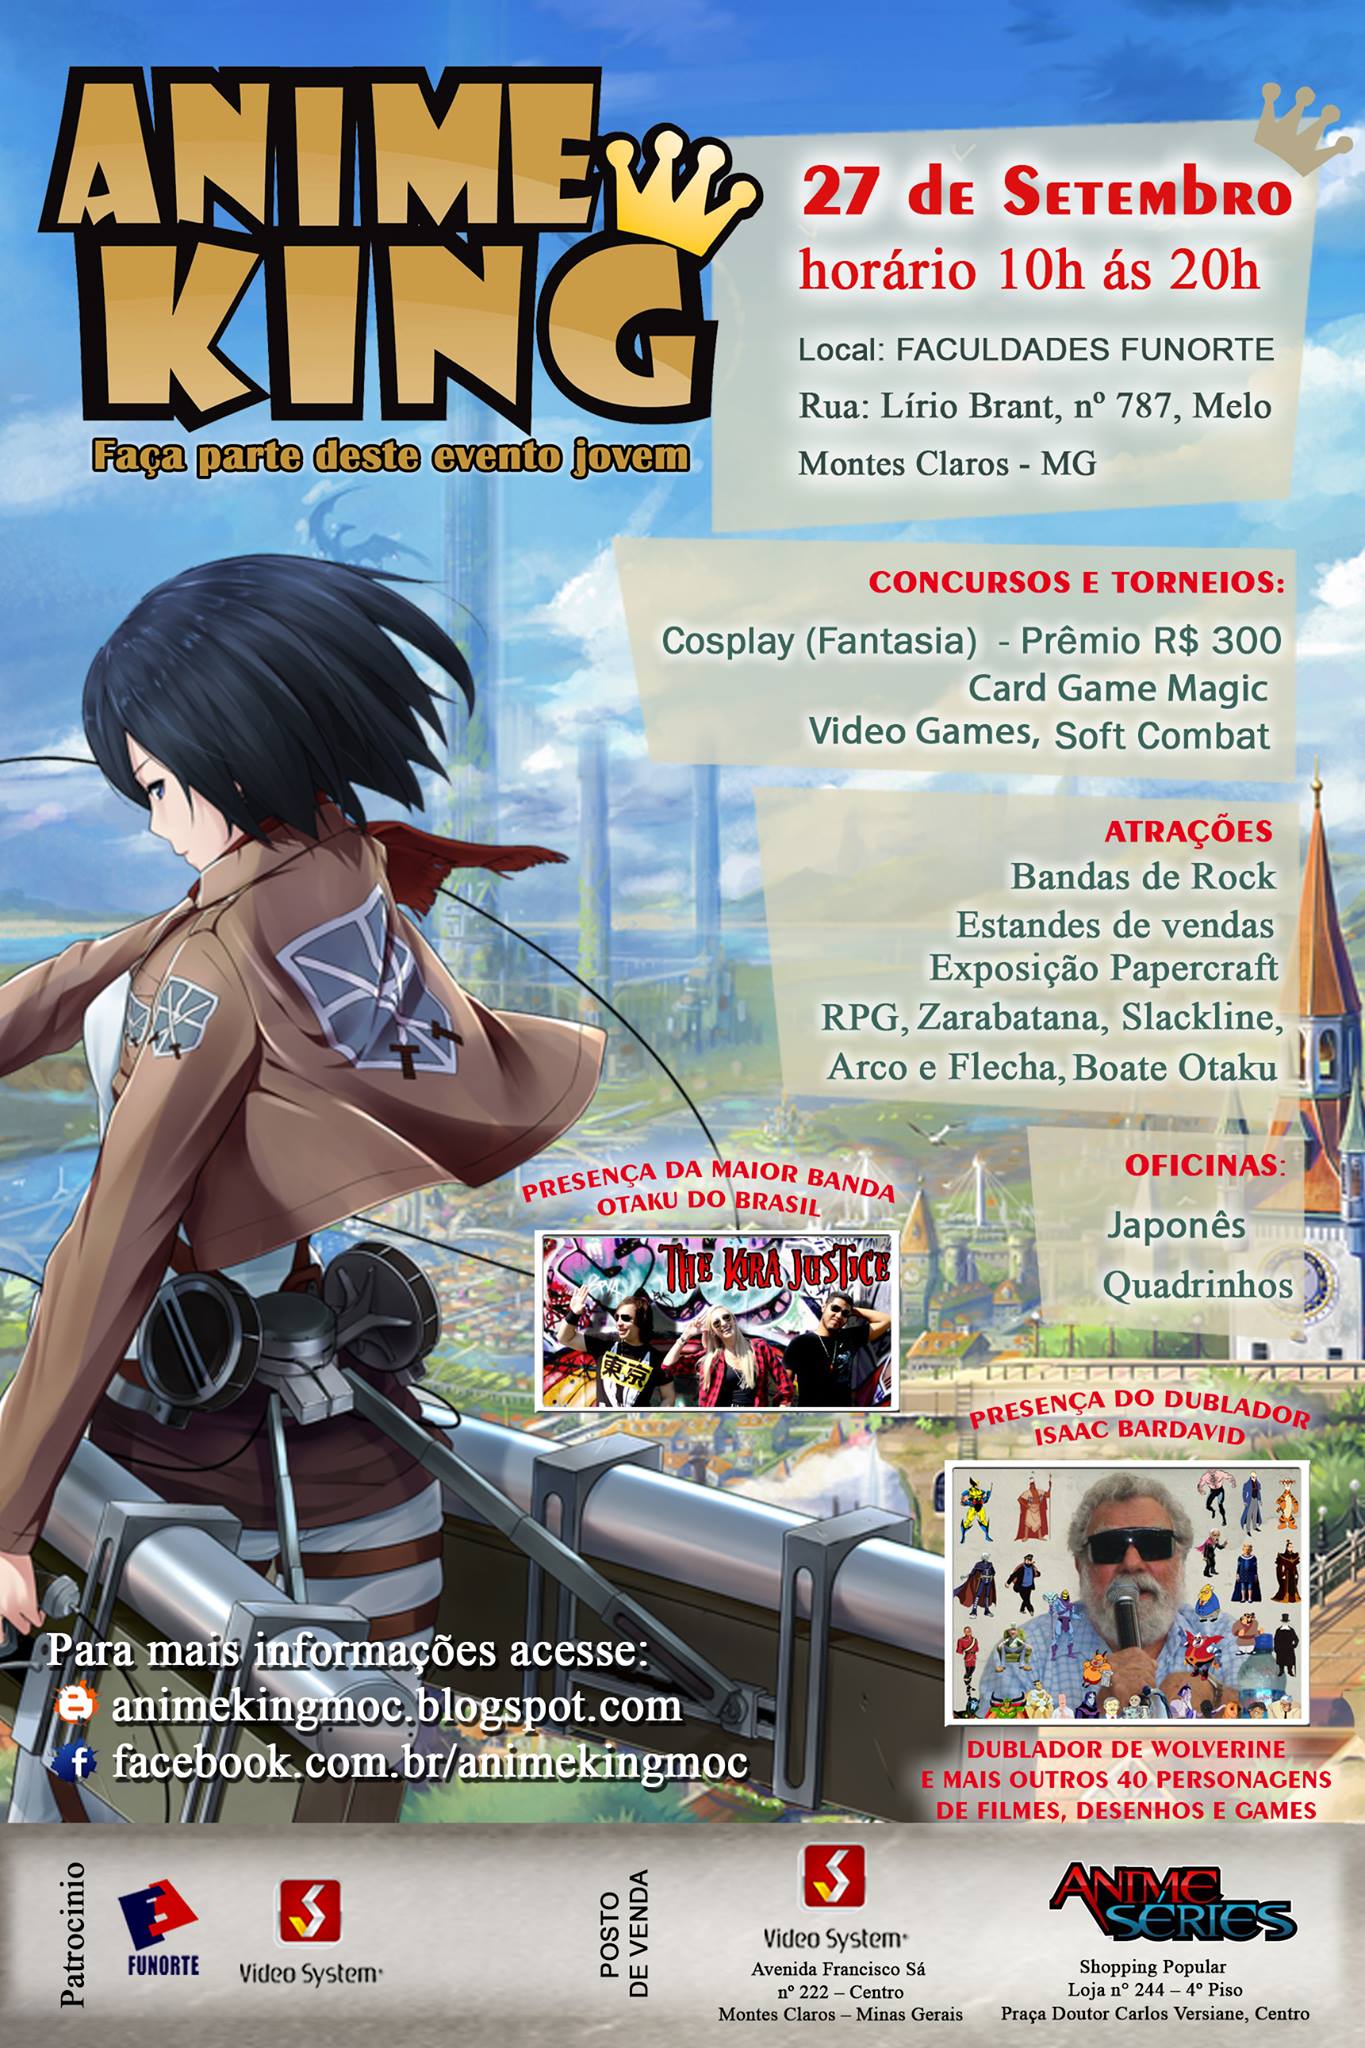 Anime King V - Made in Japan